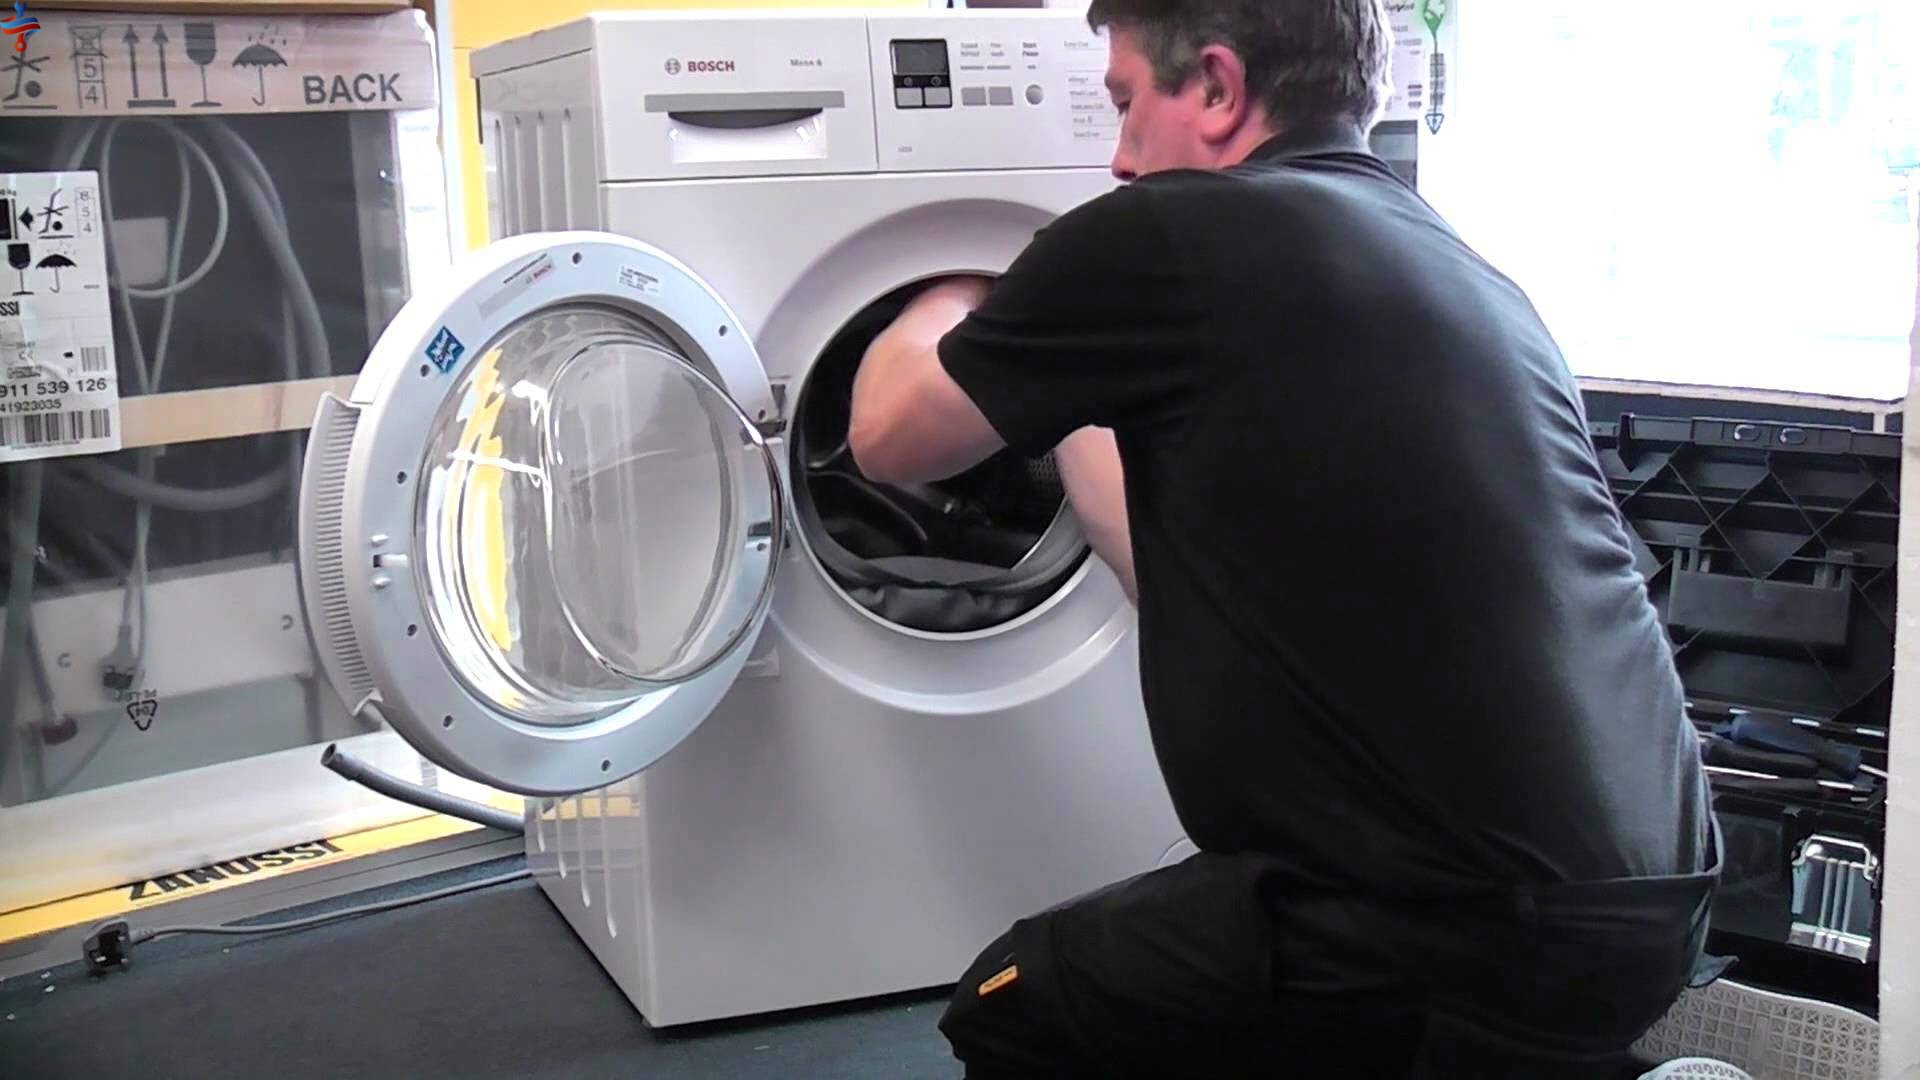 لاستیک دور درب ماشین لباسشویی چیست و چه کاربردی دارد؟